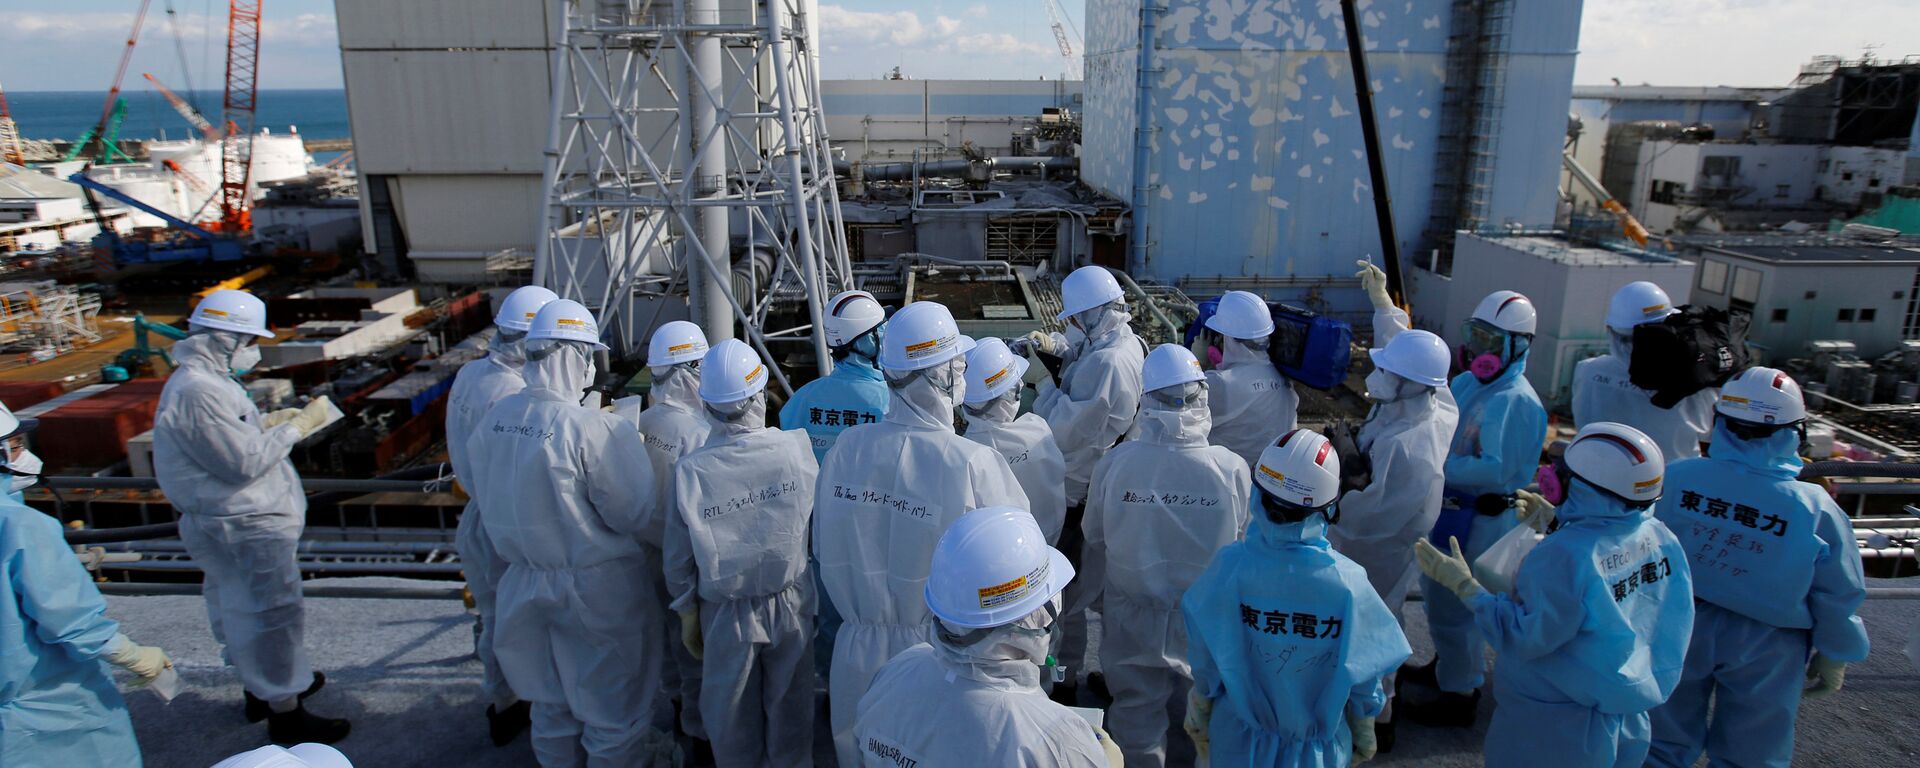 Los medios de comunicación reciben información de los empleados de TEPCO en la planta de energía nuclear Fukushima 1, prefectura de Fukushima, Japón. - Sputnik Mundo, 1920, 11.03.2021